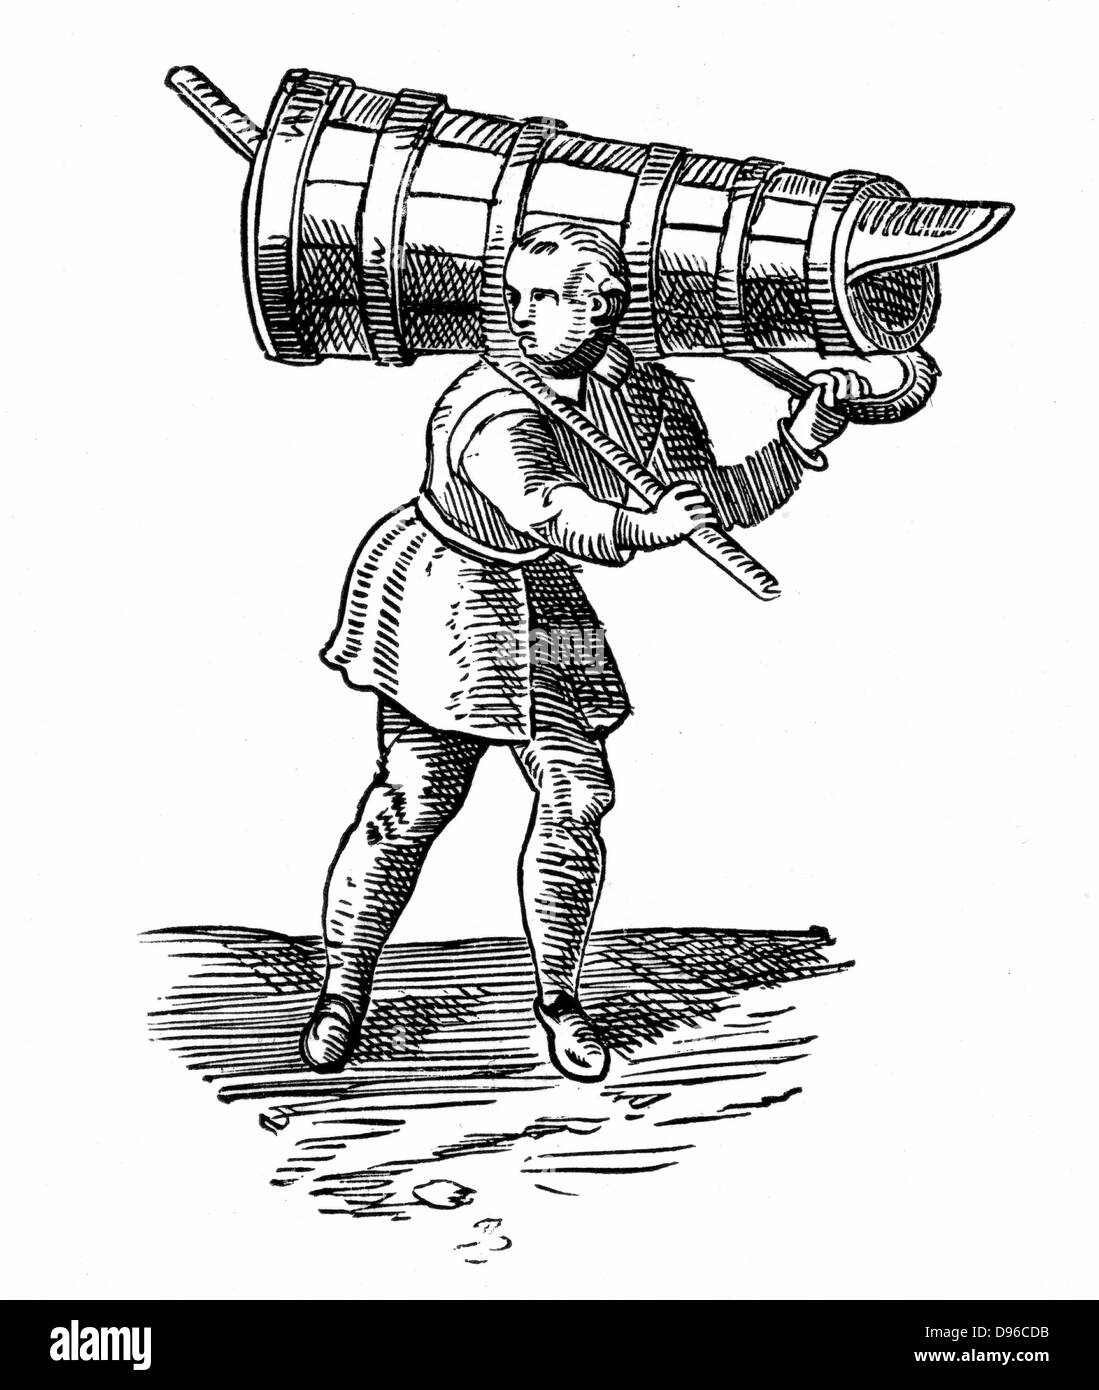 Un apprenti, un navire transportant un aussi grand que lui-même, sur son chemin pour aller chercher de l'eau. Gravure de Braun "Civitates Orbis Terrarum" 1572. Banque D'Images